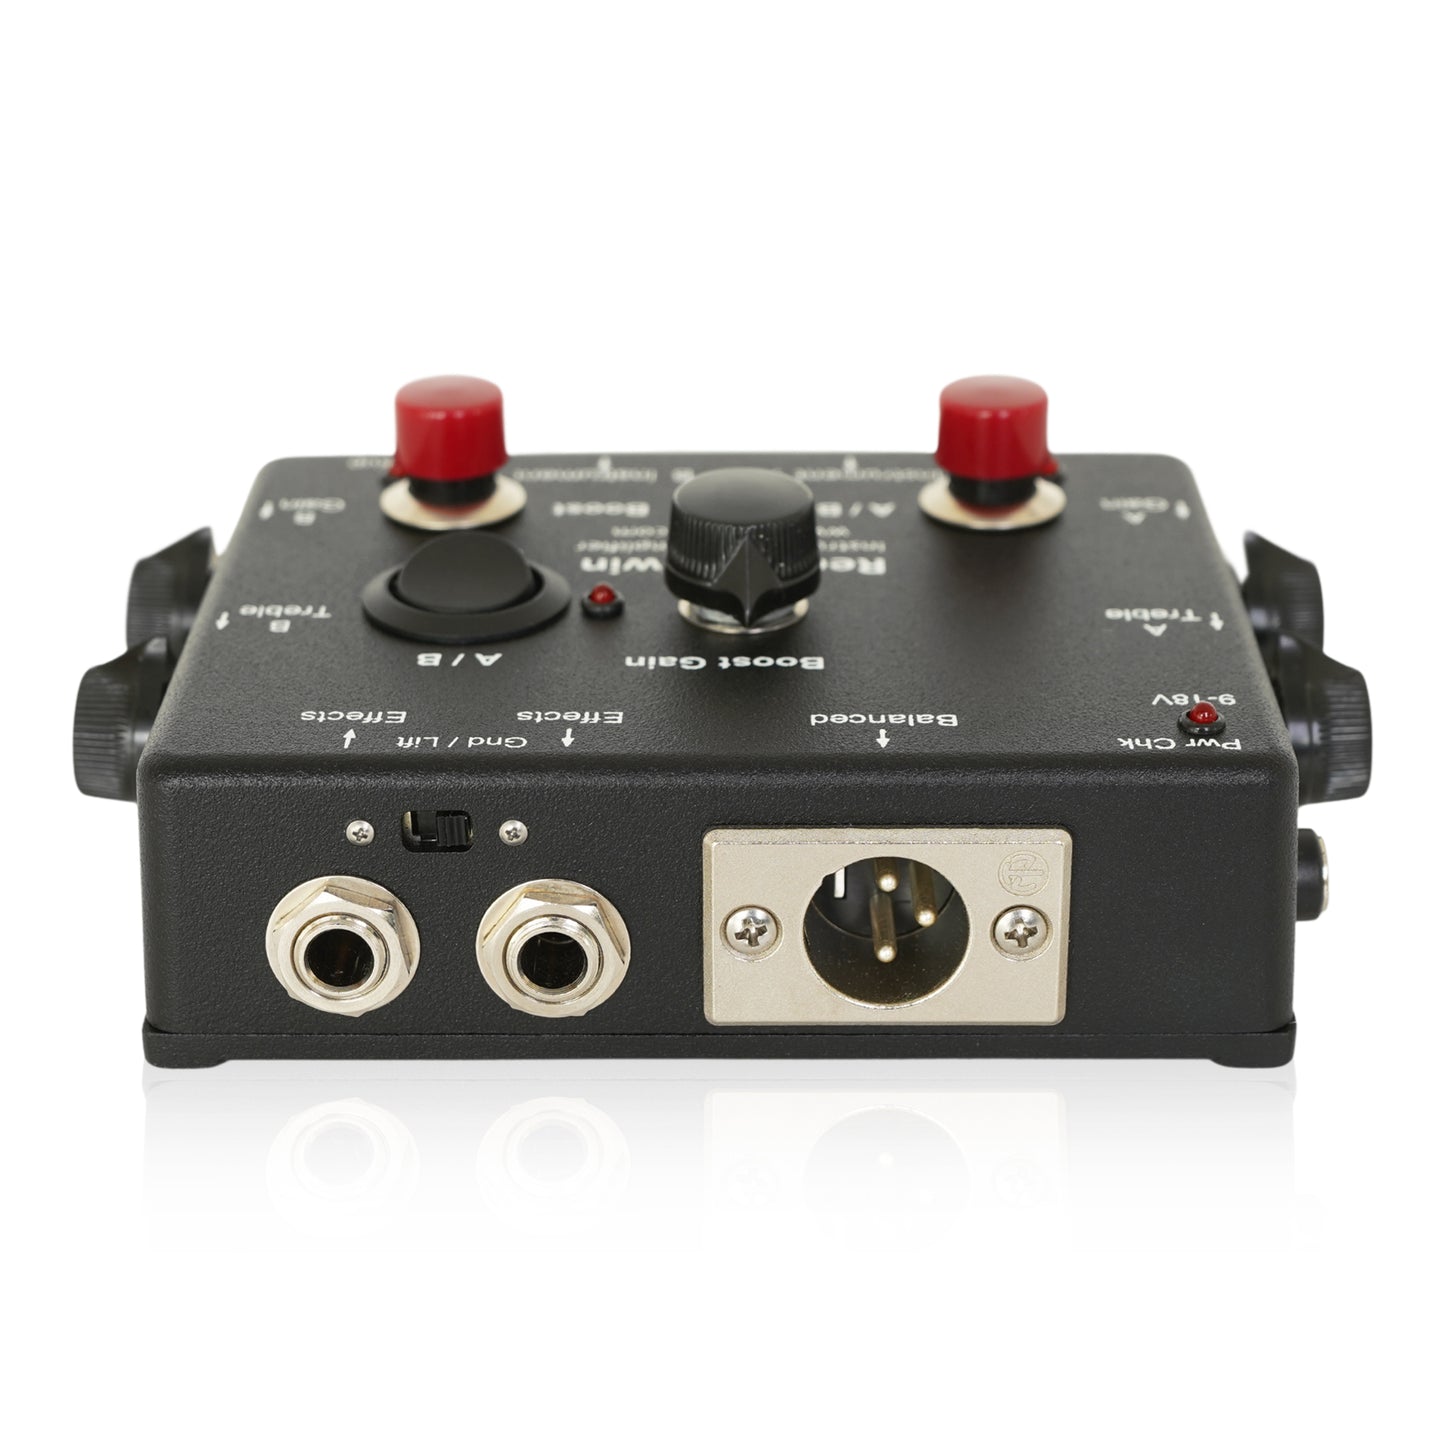 Fire-Eye/Red-Eye Twin Instrument Preamplifier